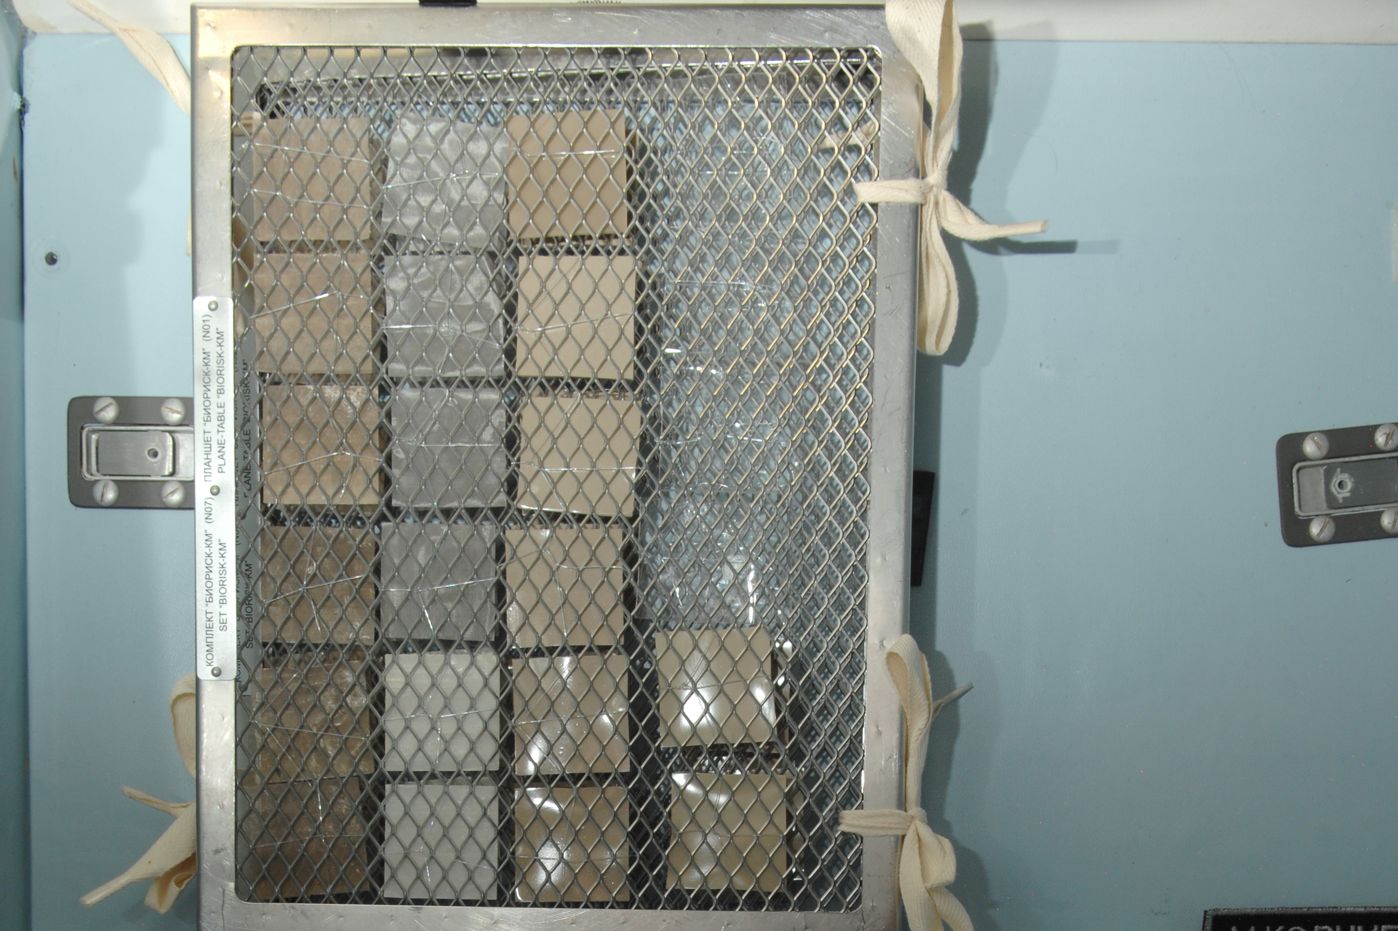 Testoberflächen mit und ohne antimikrobielle Beschichtung an der Toilettentür der ISS